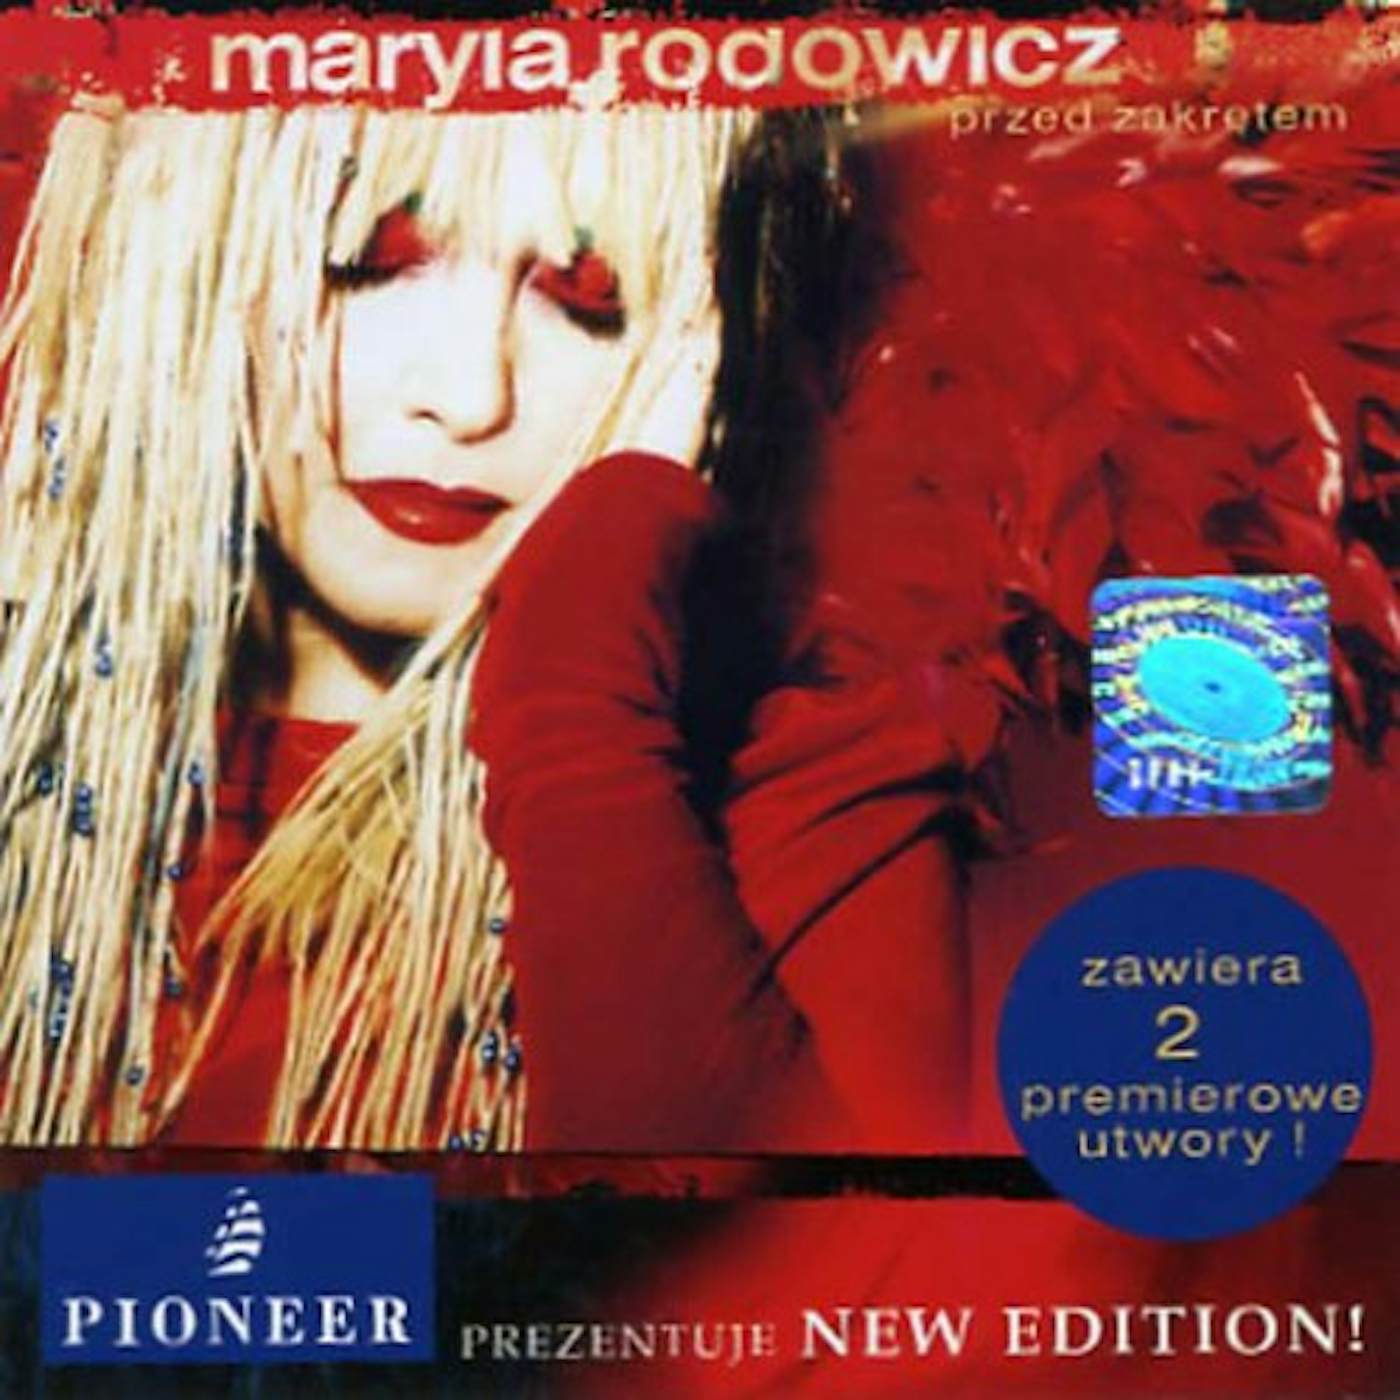 Maryla Rodowicz PRZED ZAKRETEM CD